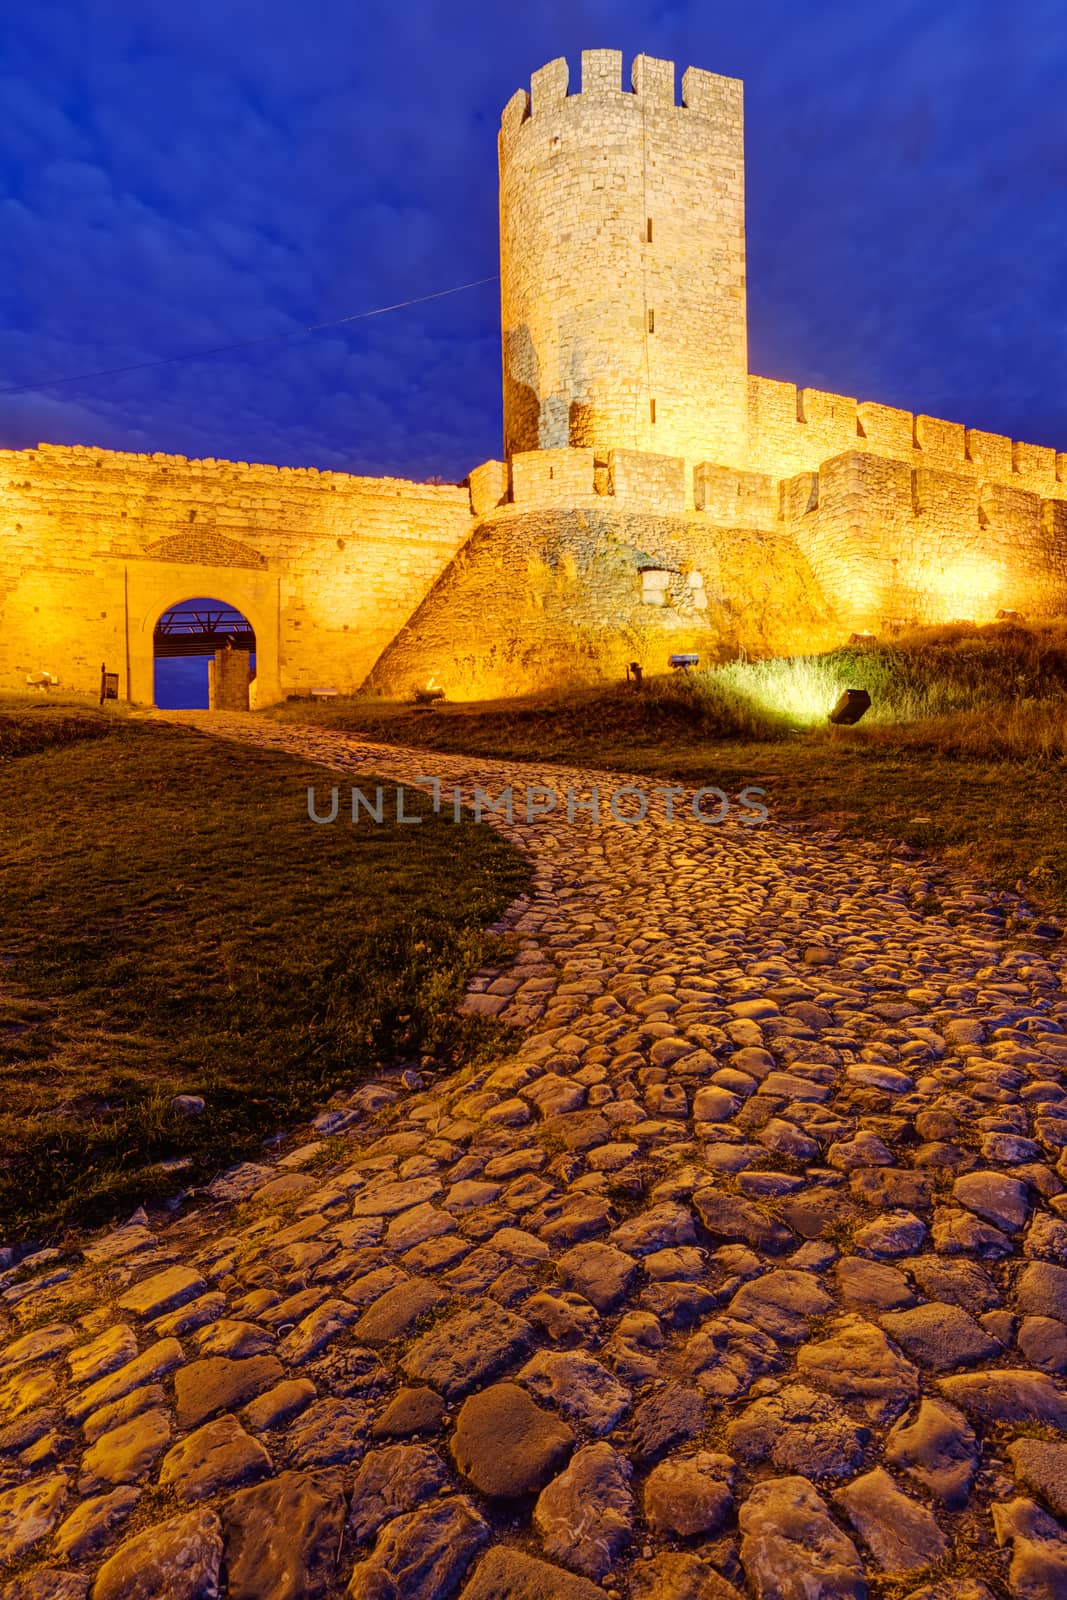 Belgrade fortress at night, Belgrade Serbia